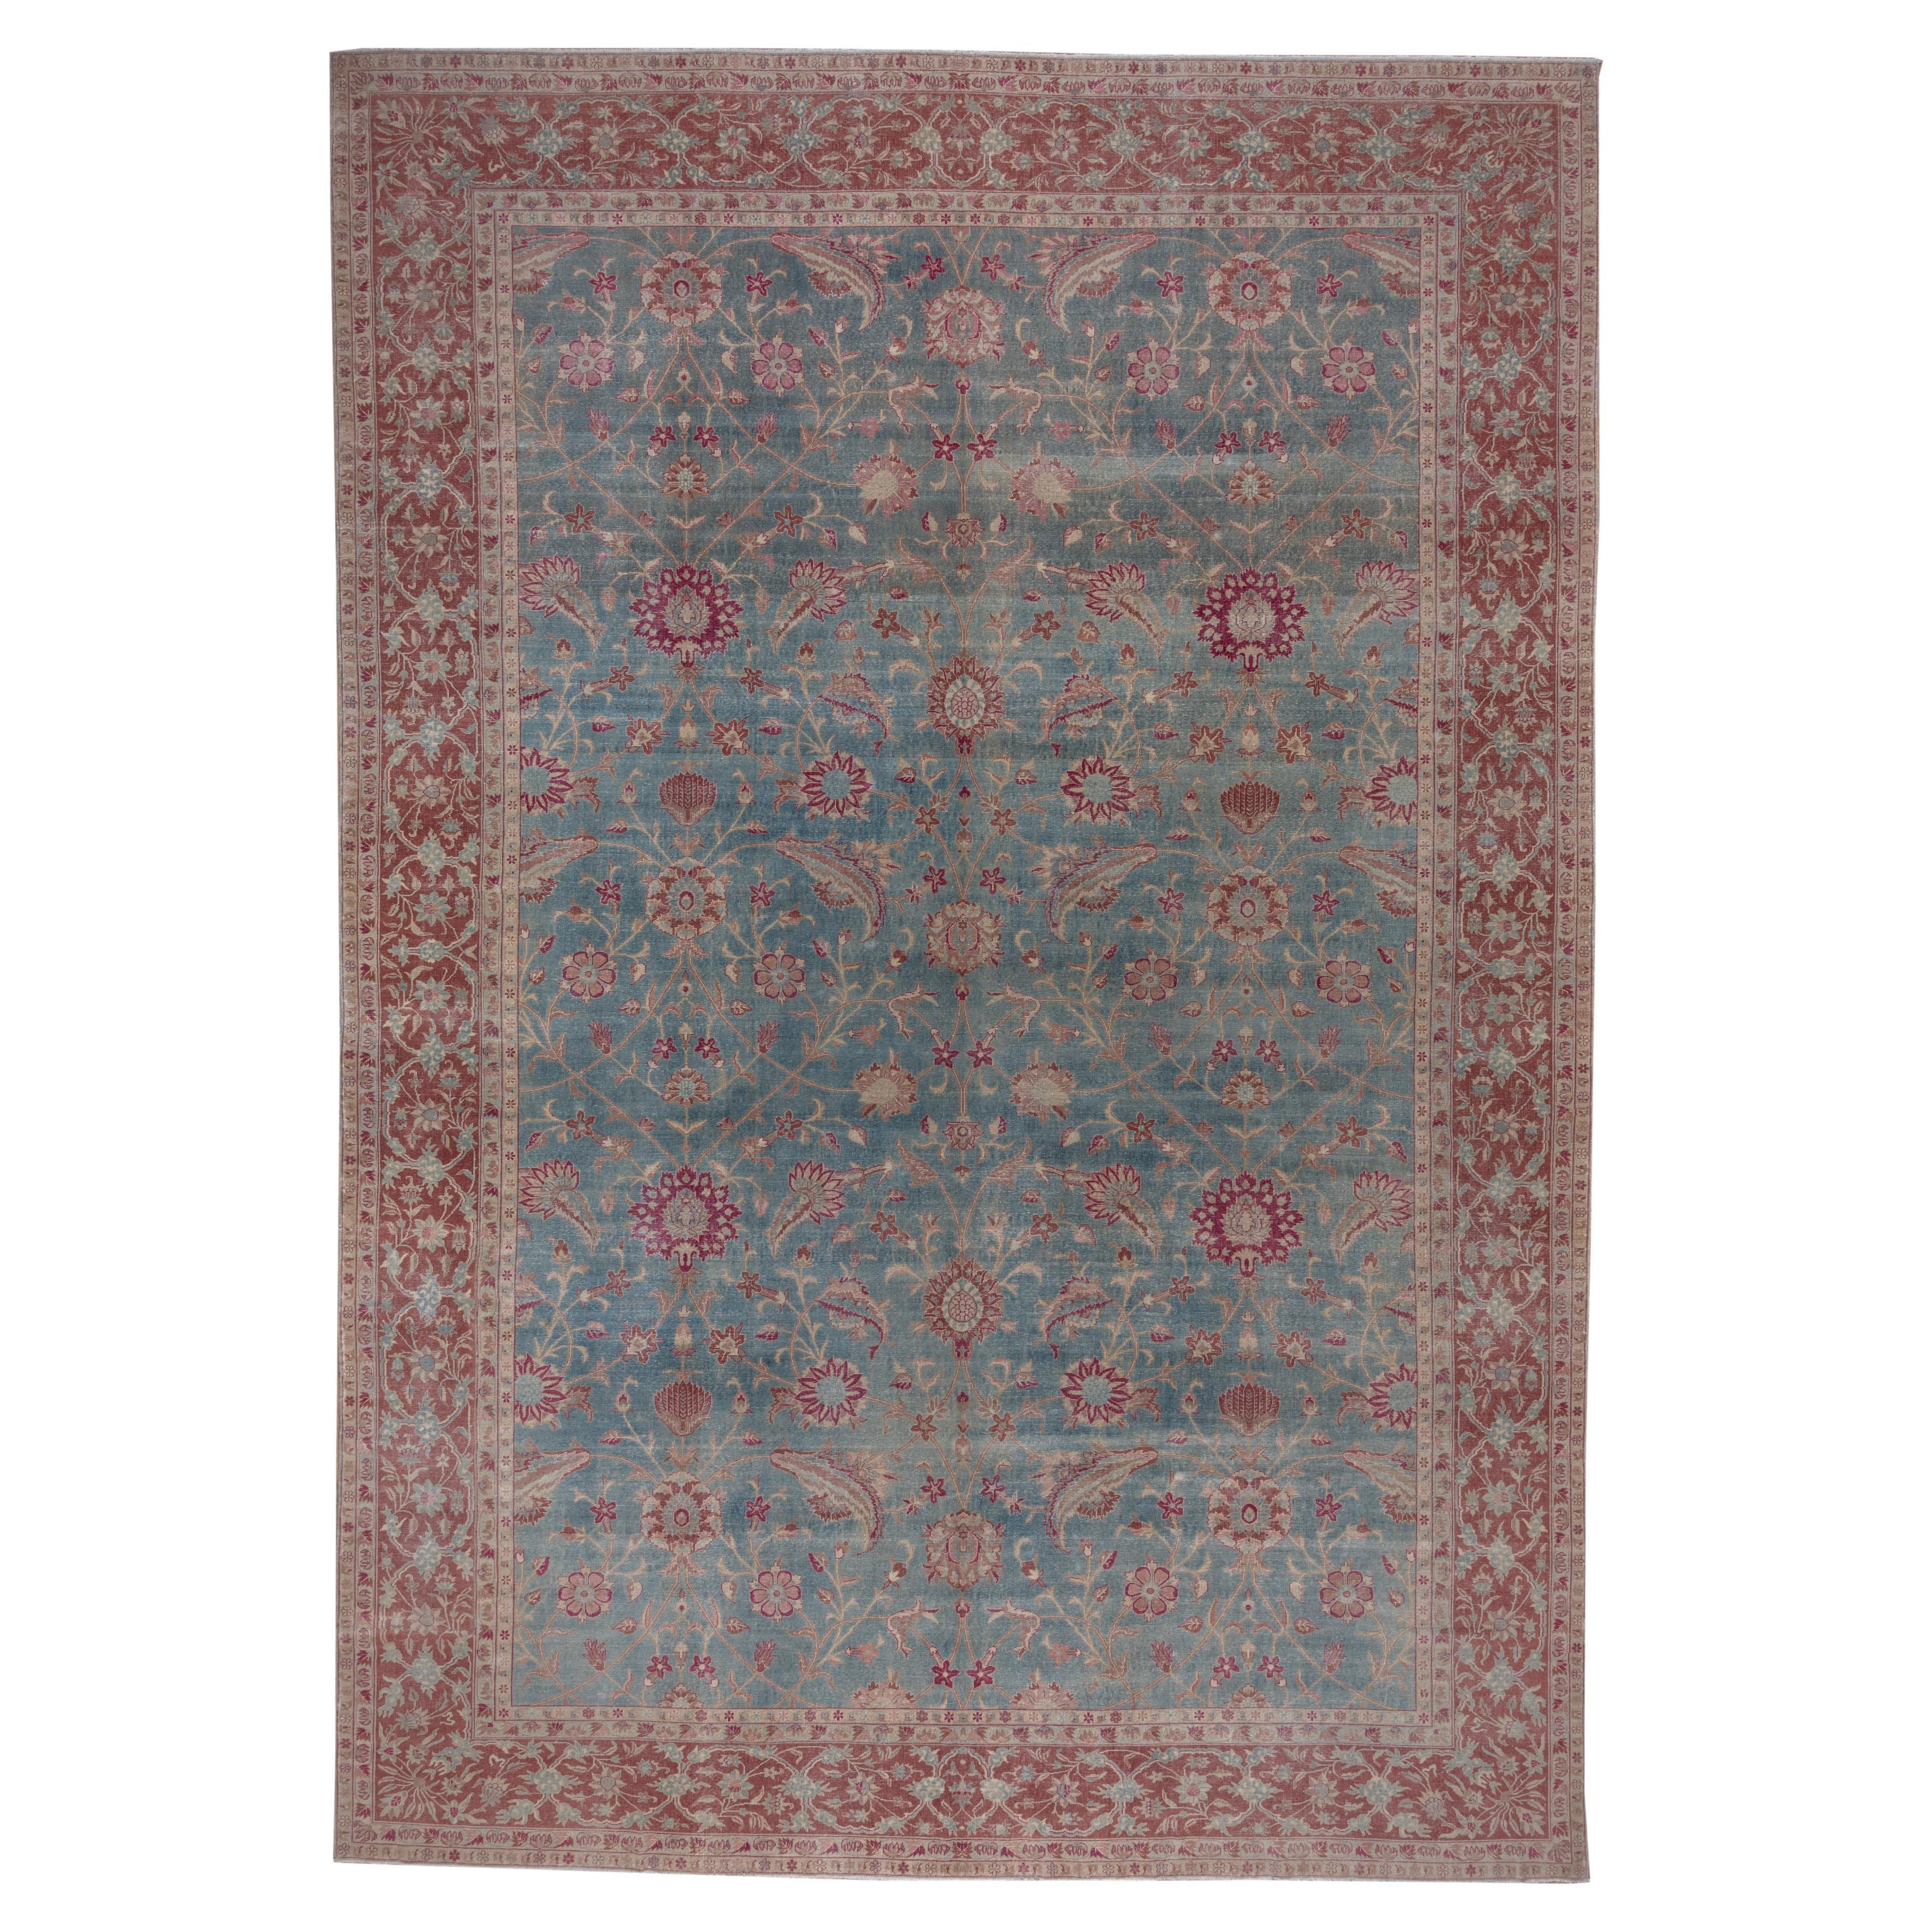 Antiker türkischer Sivas-Teppich, blaues Blumenfeld, rote Bordüren, ca. 1920er Jahre